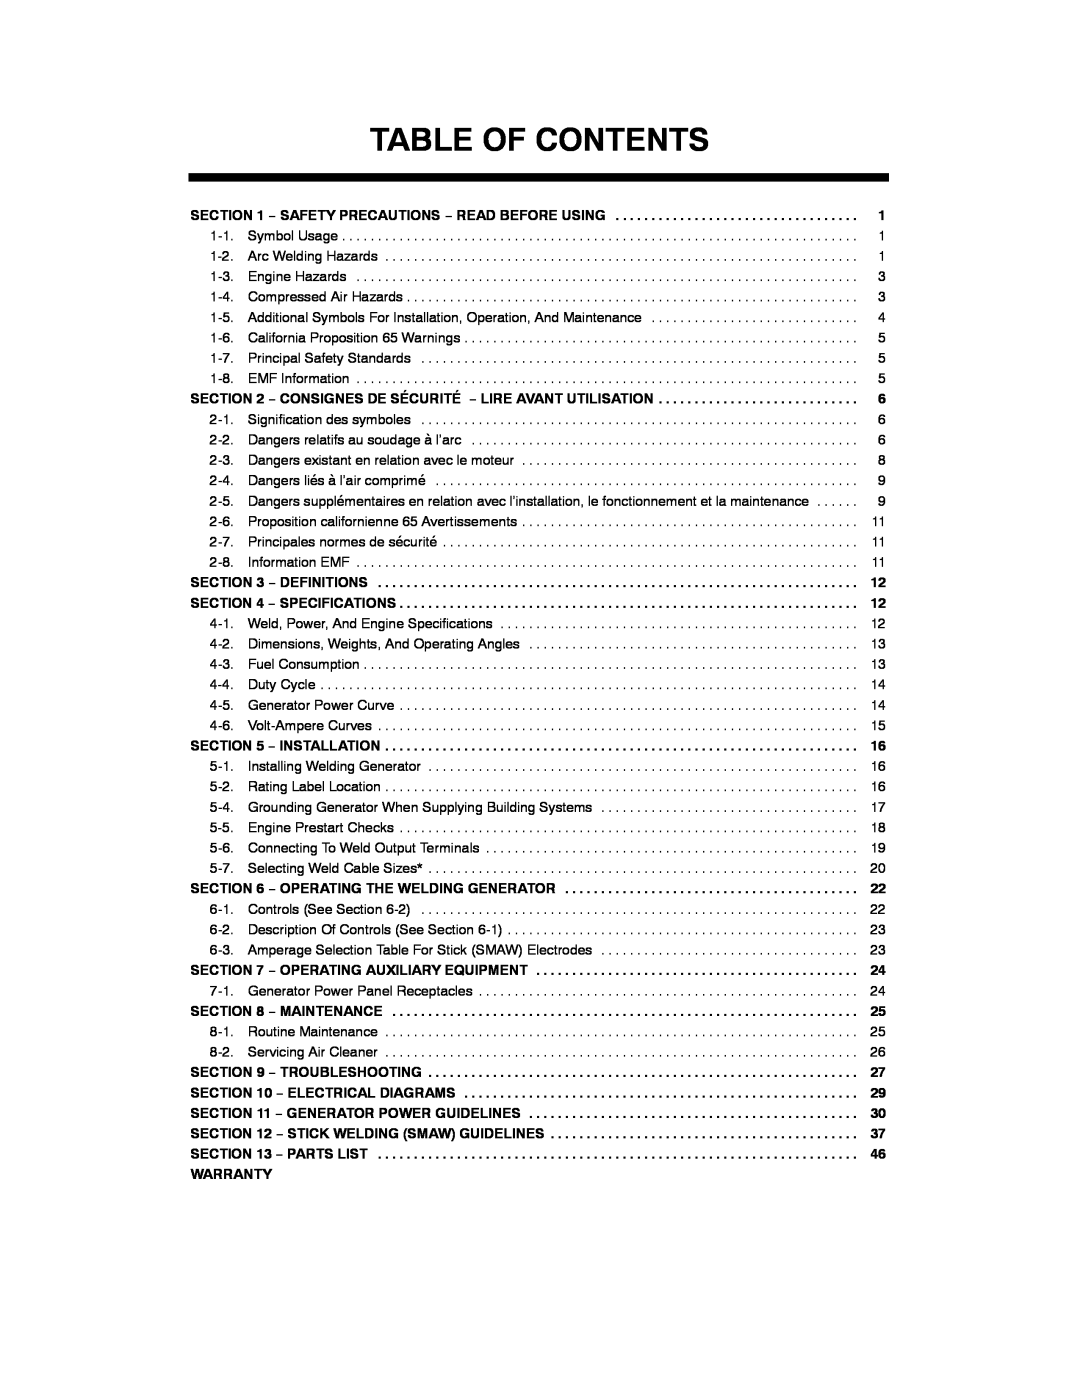 Hobart Welding Products 4500 Table Of Contents, Consignes De Sécurité − Lire Avant Utilisation, Maintenance, Warranty 